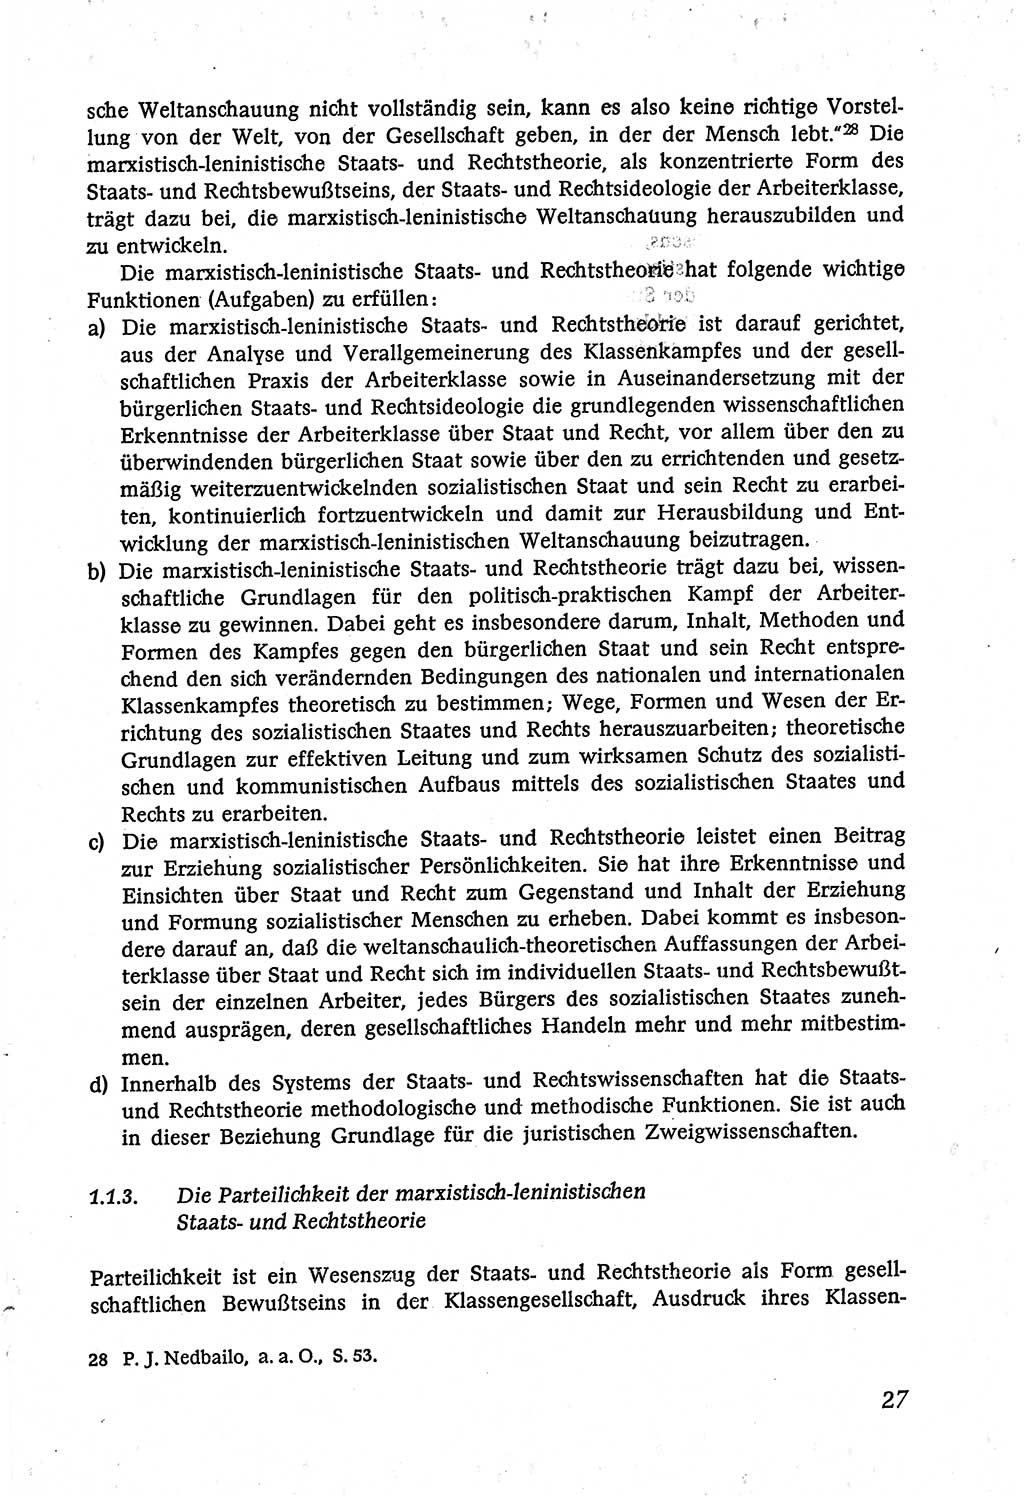 Marxistisch-leninistische (ML) Staats- und Rechtstheorie [Deutsche Demokratische Republik (DDR)], Lehrbuch 1980, Seite 27 (ML St.-R.-Th. DDR Lb. 1980, S. 27)